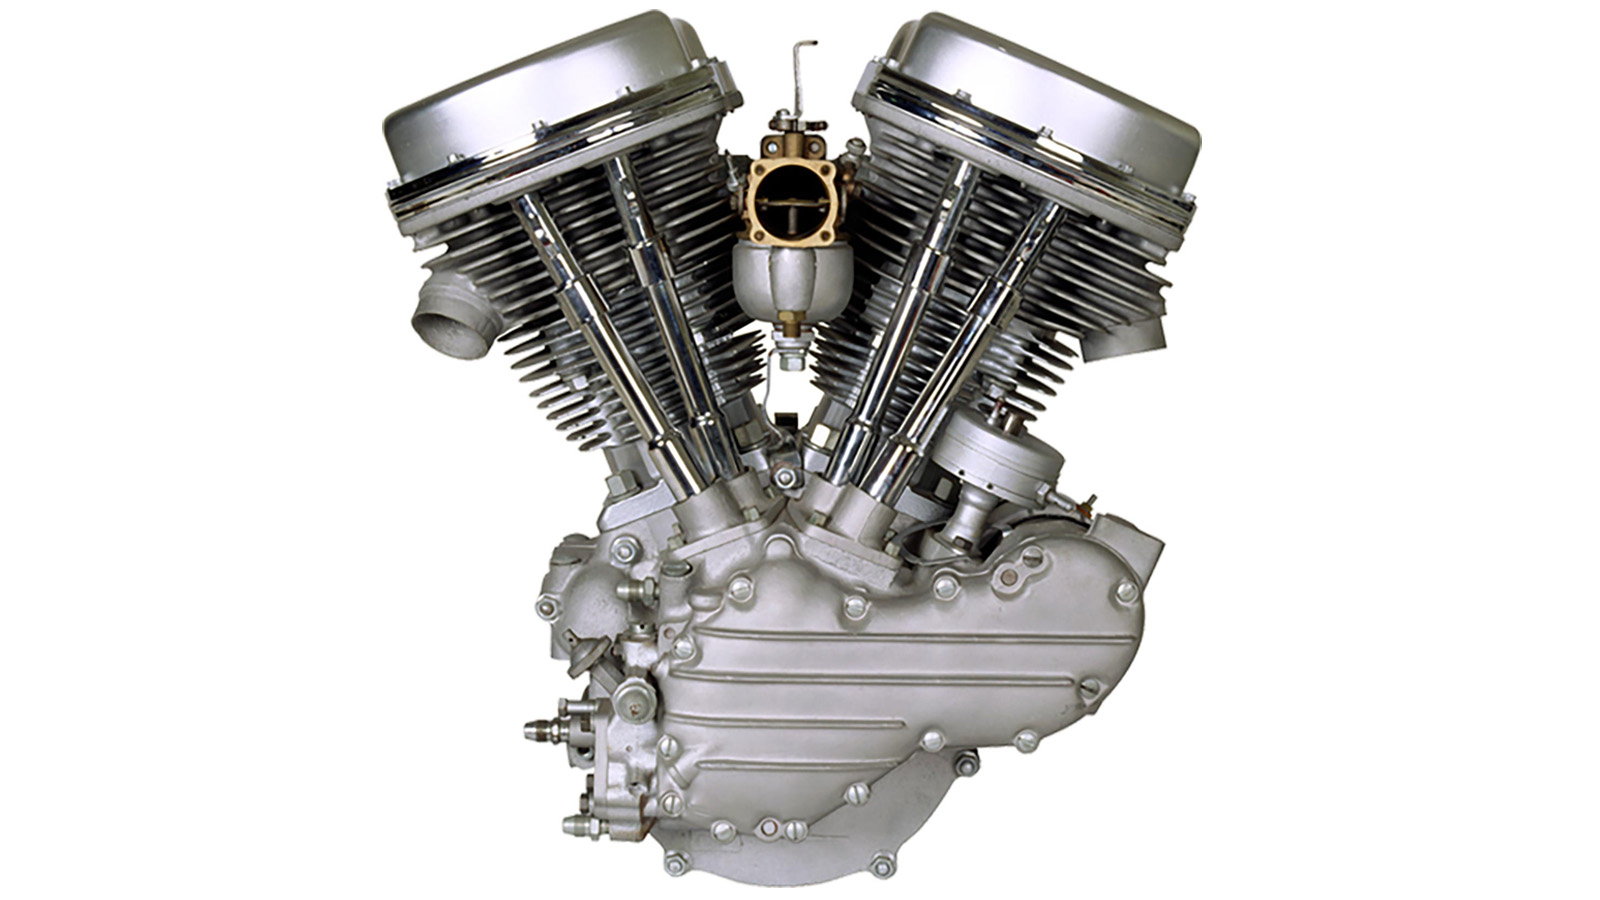 Мотор байка. Мотор Харлей Дэвидсон. Мотор Harley Davidson EVO. Двигатель двигатель Харлей Дэвидсон. Harley Davidson Evolution engine.